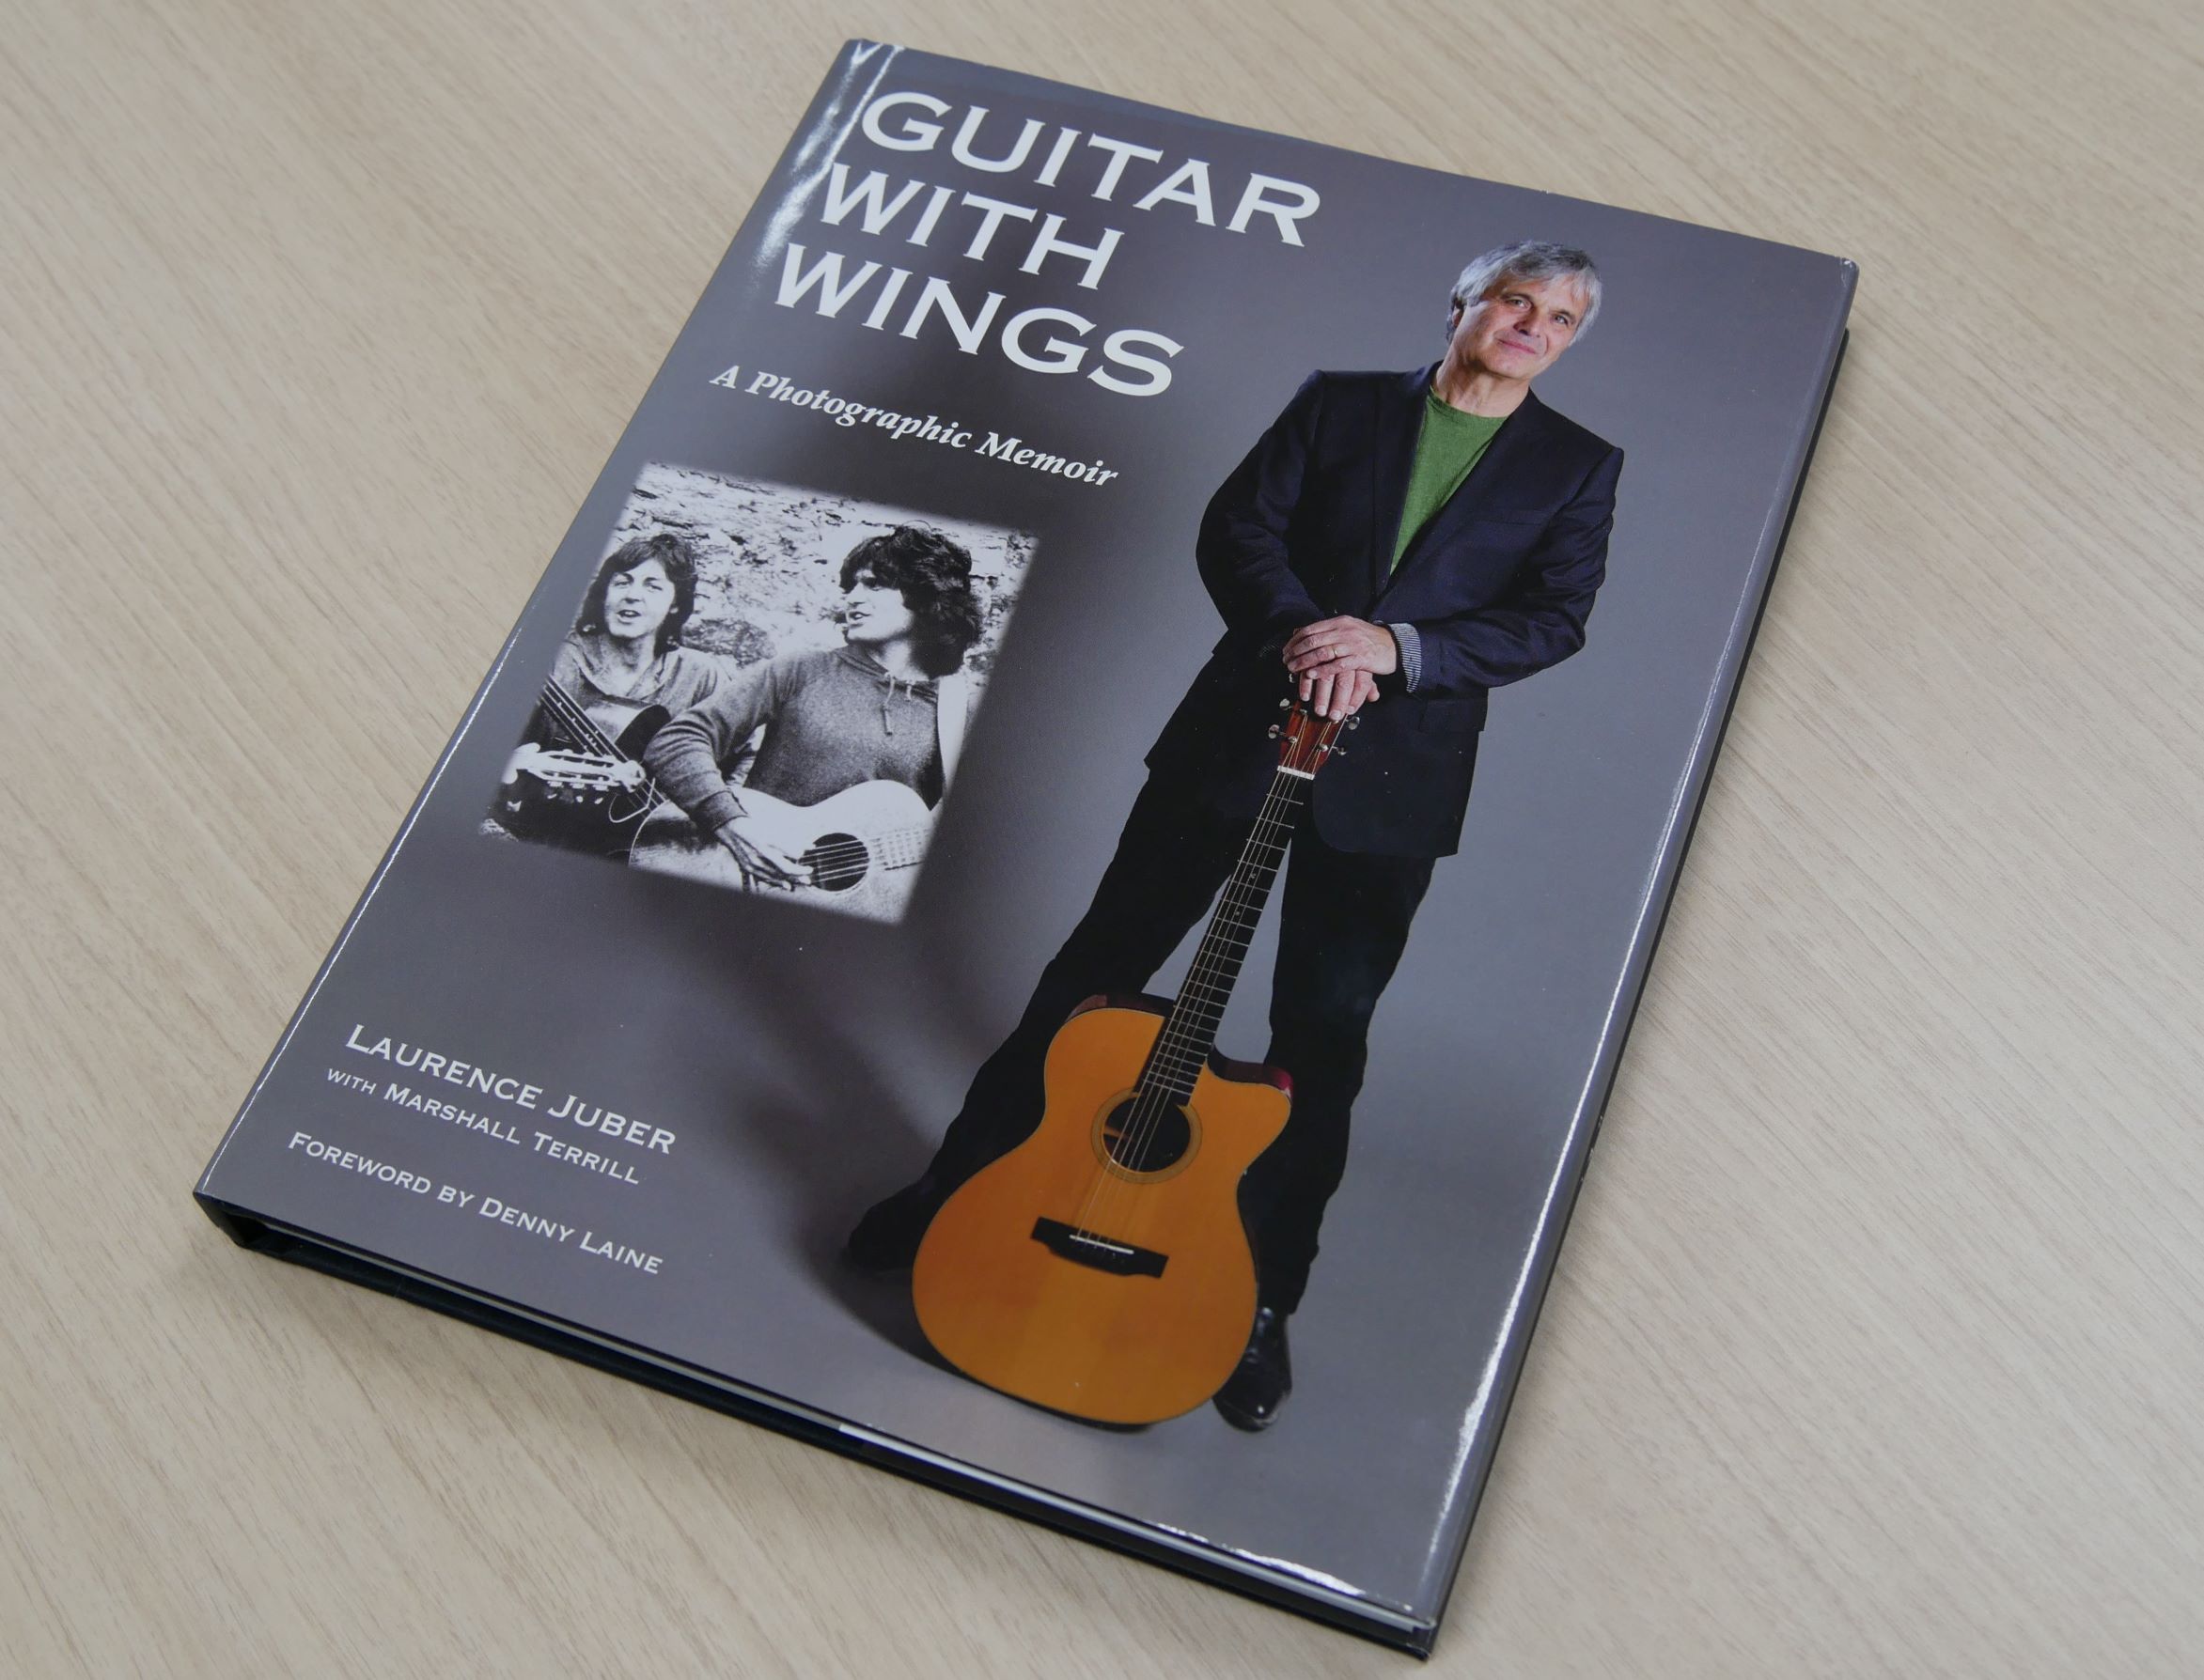 『Guitar with Wings: A Photographic Memoir』 （Laurence Juber著・Dalton Watson刊）